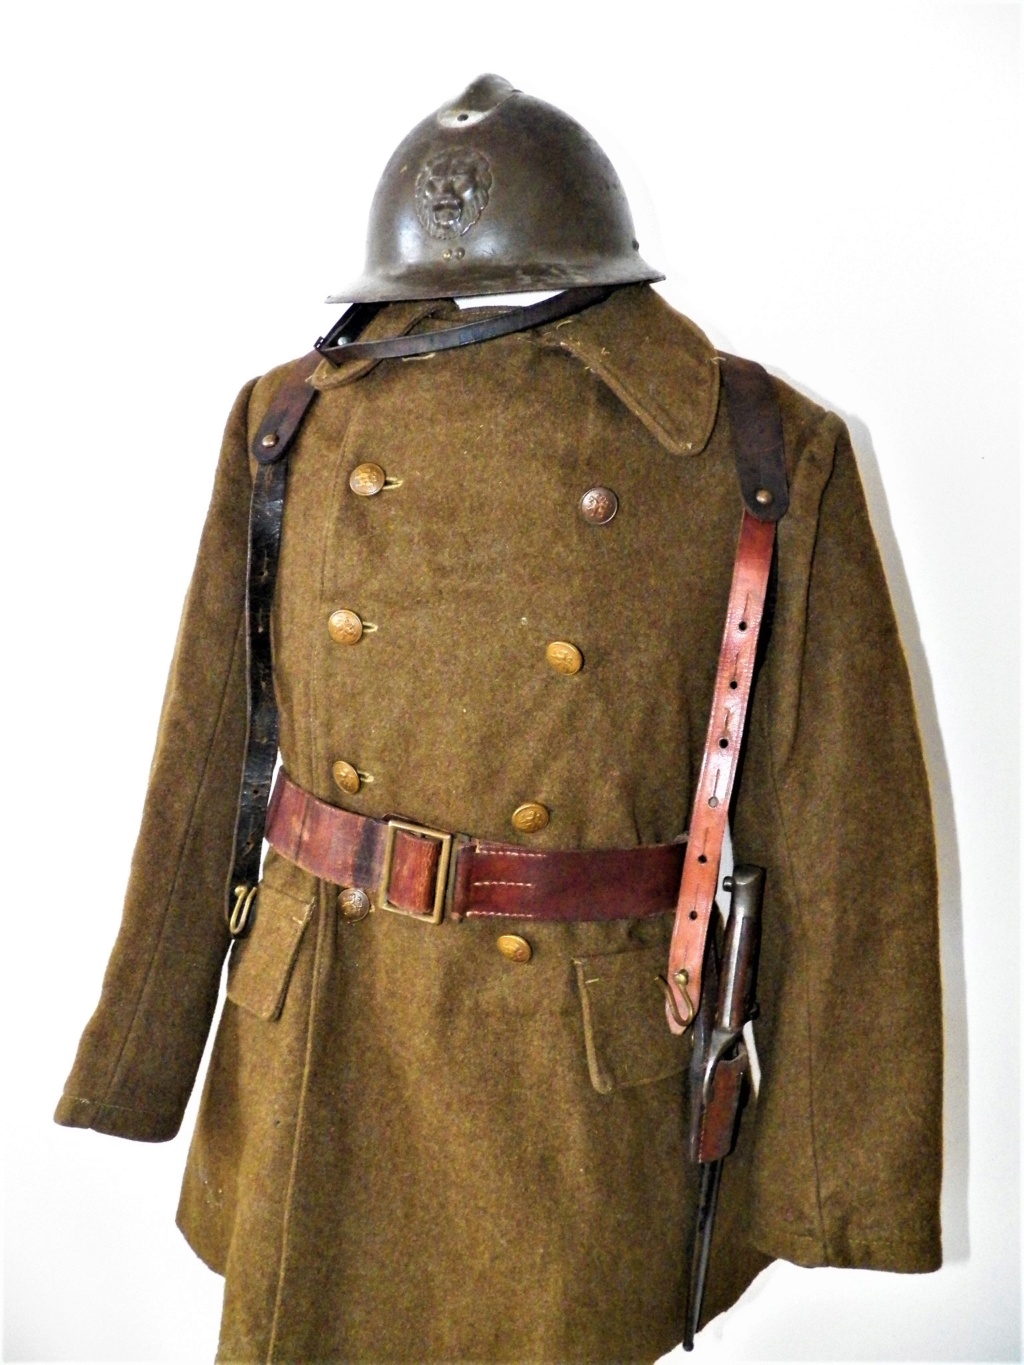 Les tenues et équipements du soldat belge - Page 4 103_0111